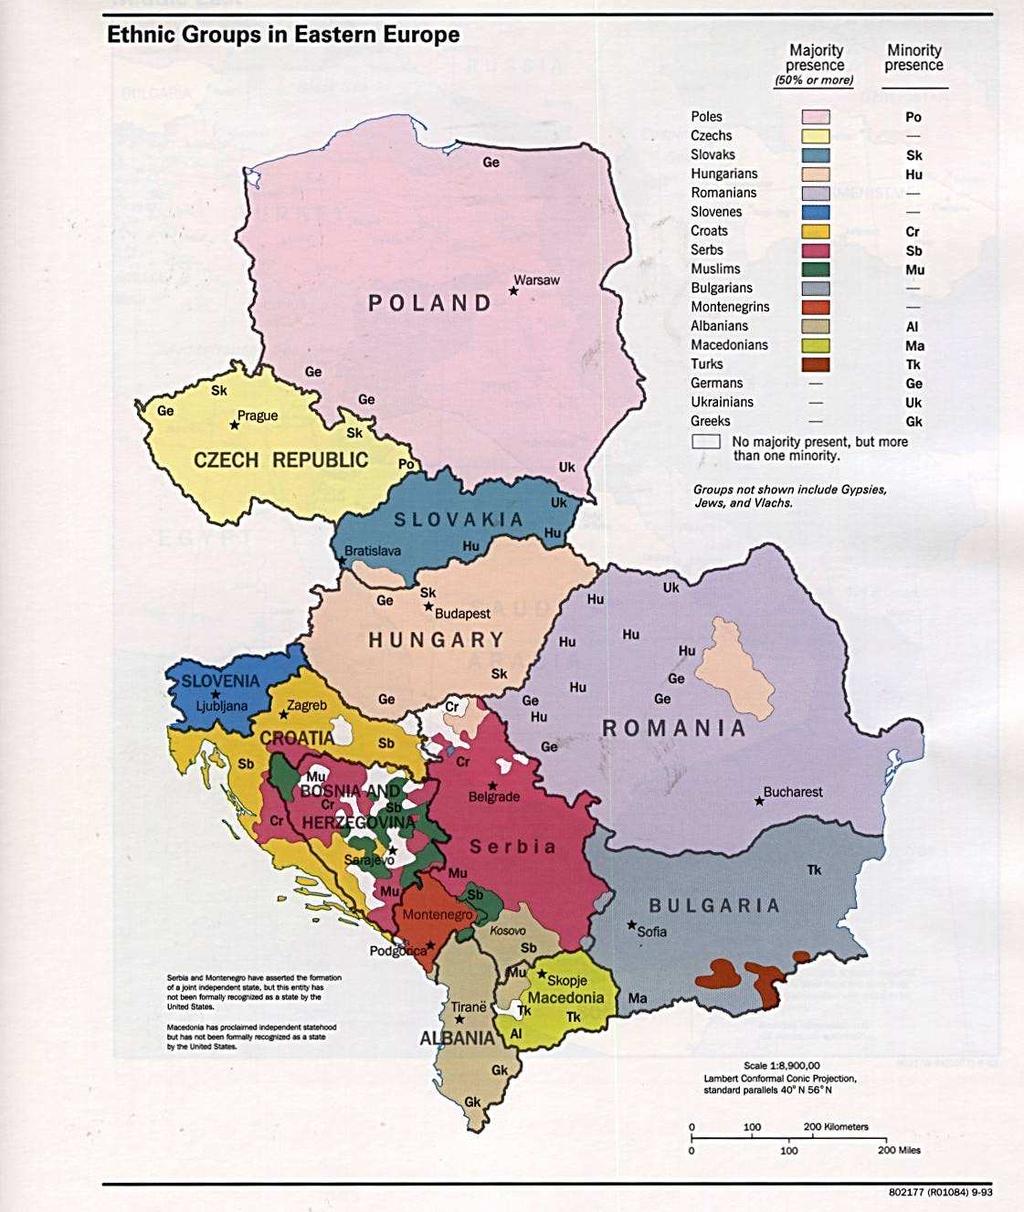 Χάρτης 3: Εθνικές οµάδες (ethnic groups) στην